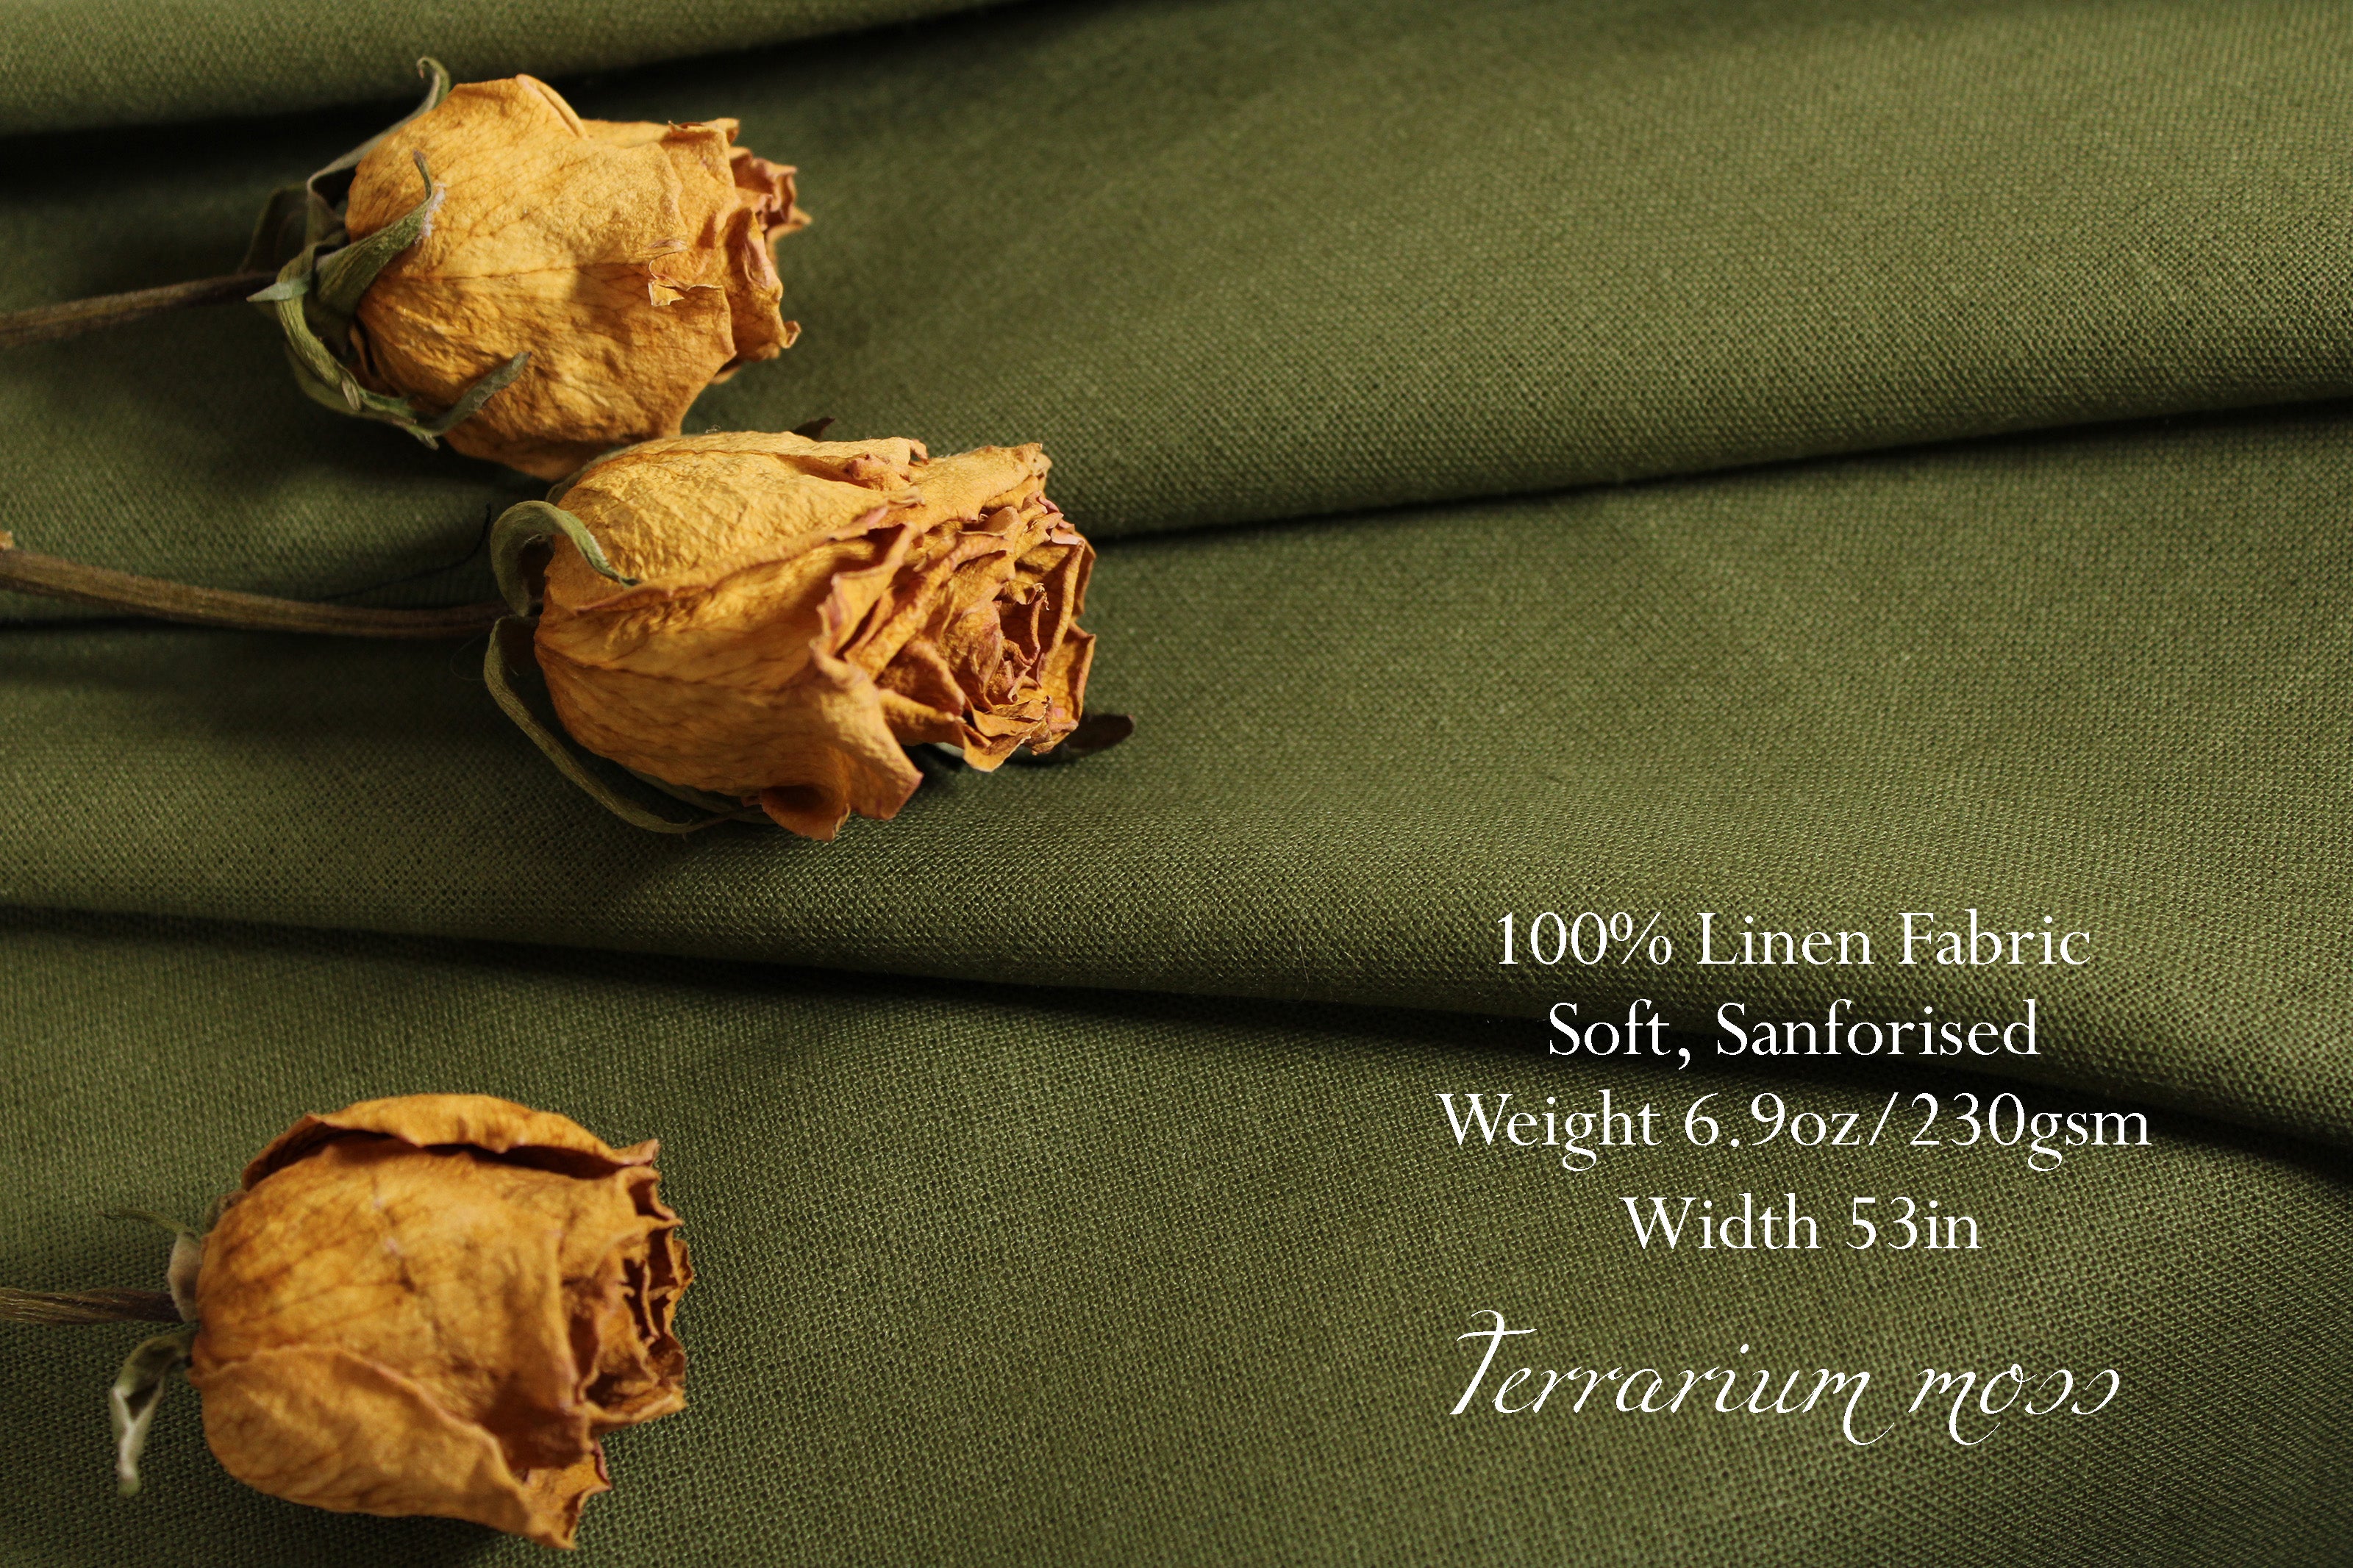 WHOLESALE 100% linen fabric / Linen Fabric Wholesale Direct / Linen by the Bolt / Terrarium moss linen fabric